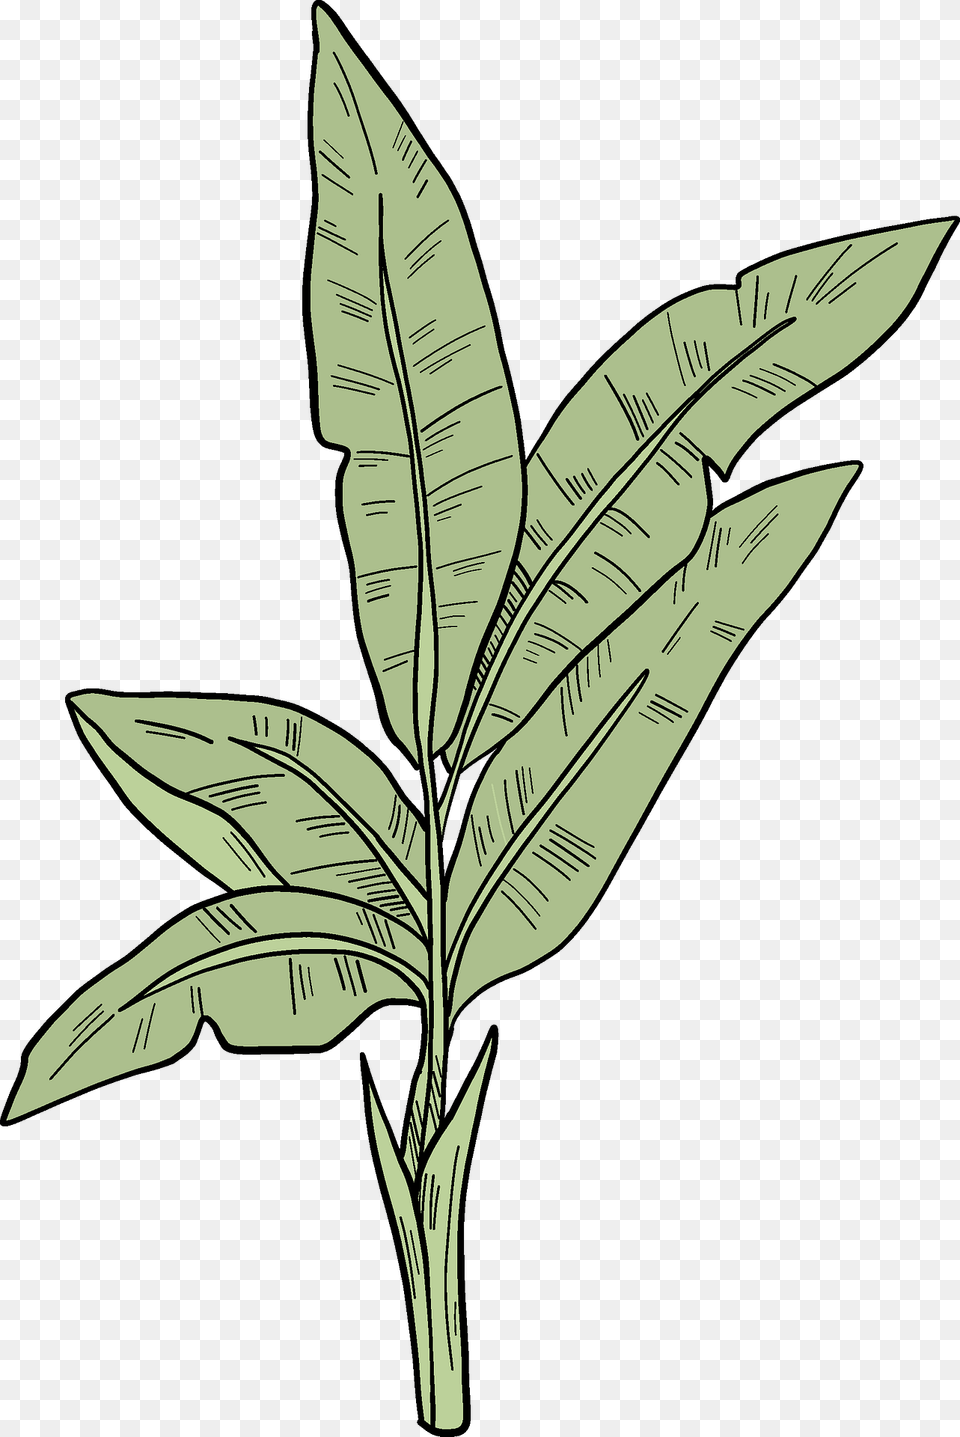 Palm Leaves Clipart, Leaf, Plant, Vegetation Free Png